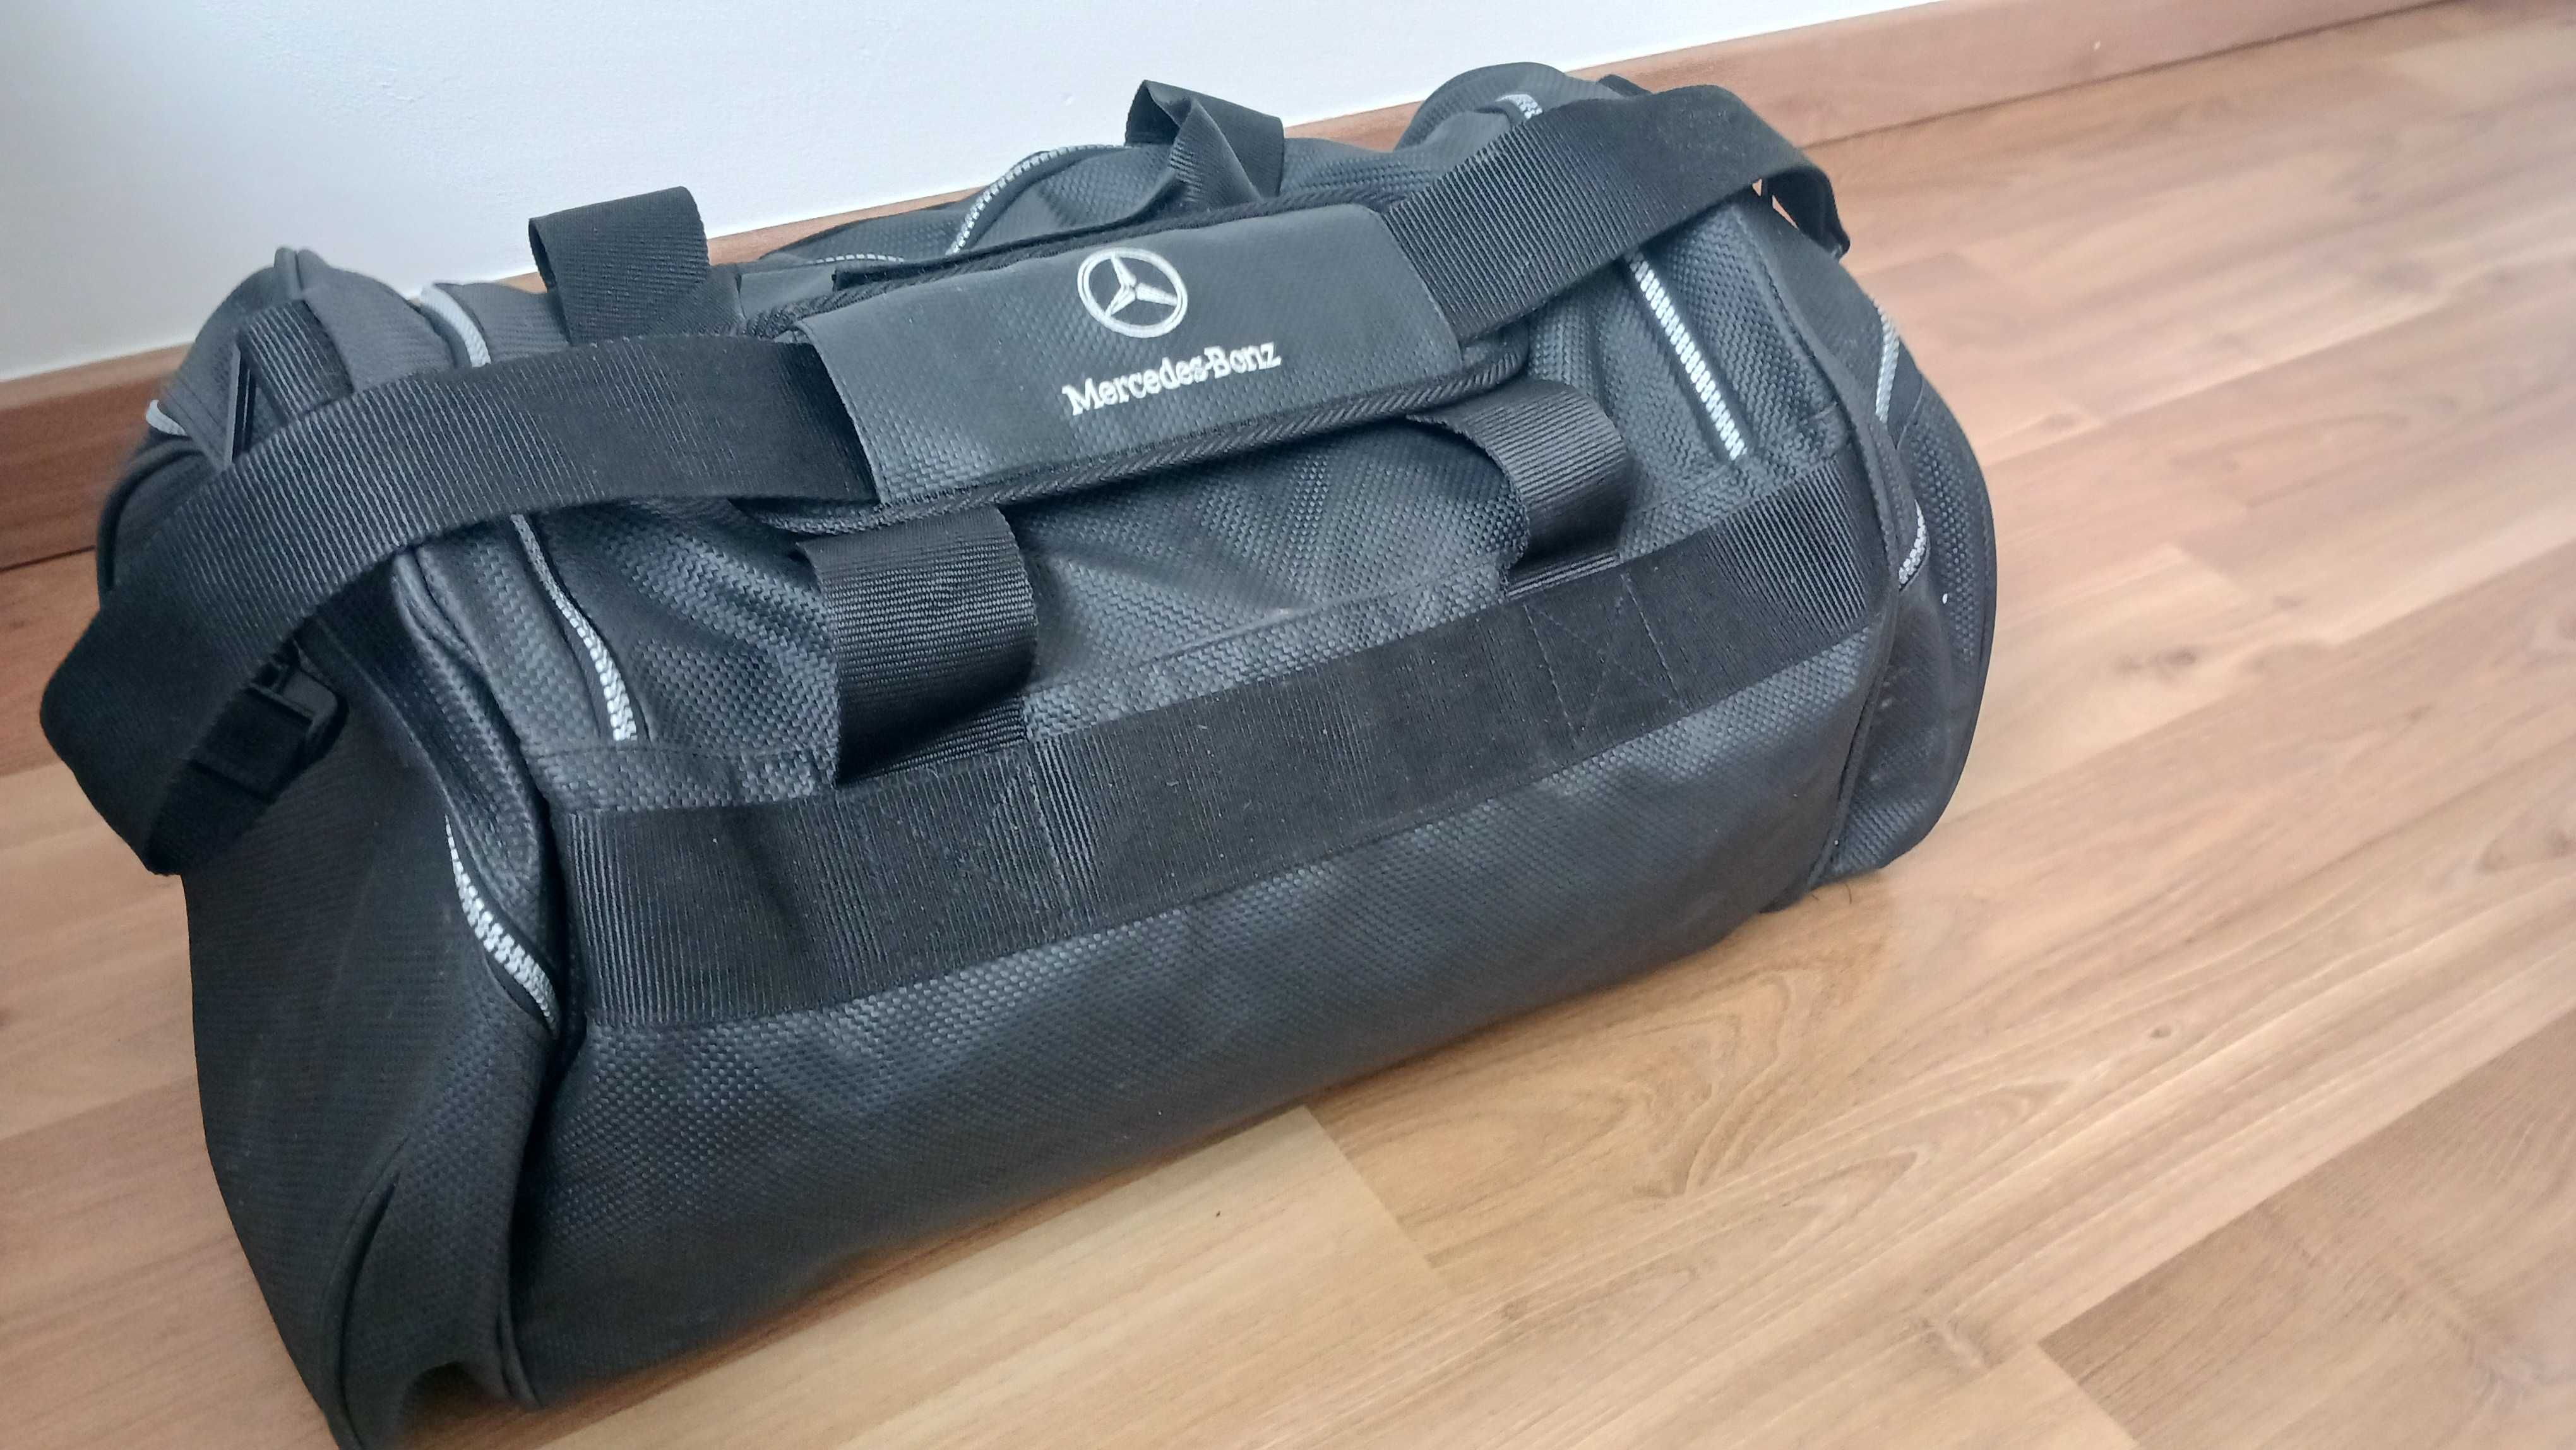 Mochila / saco de viagem ou desporto  da marca Mercedes  nova.